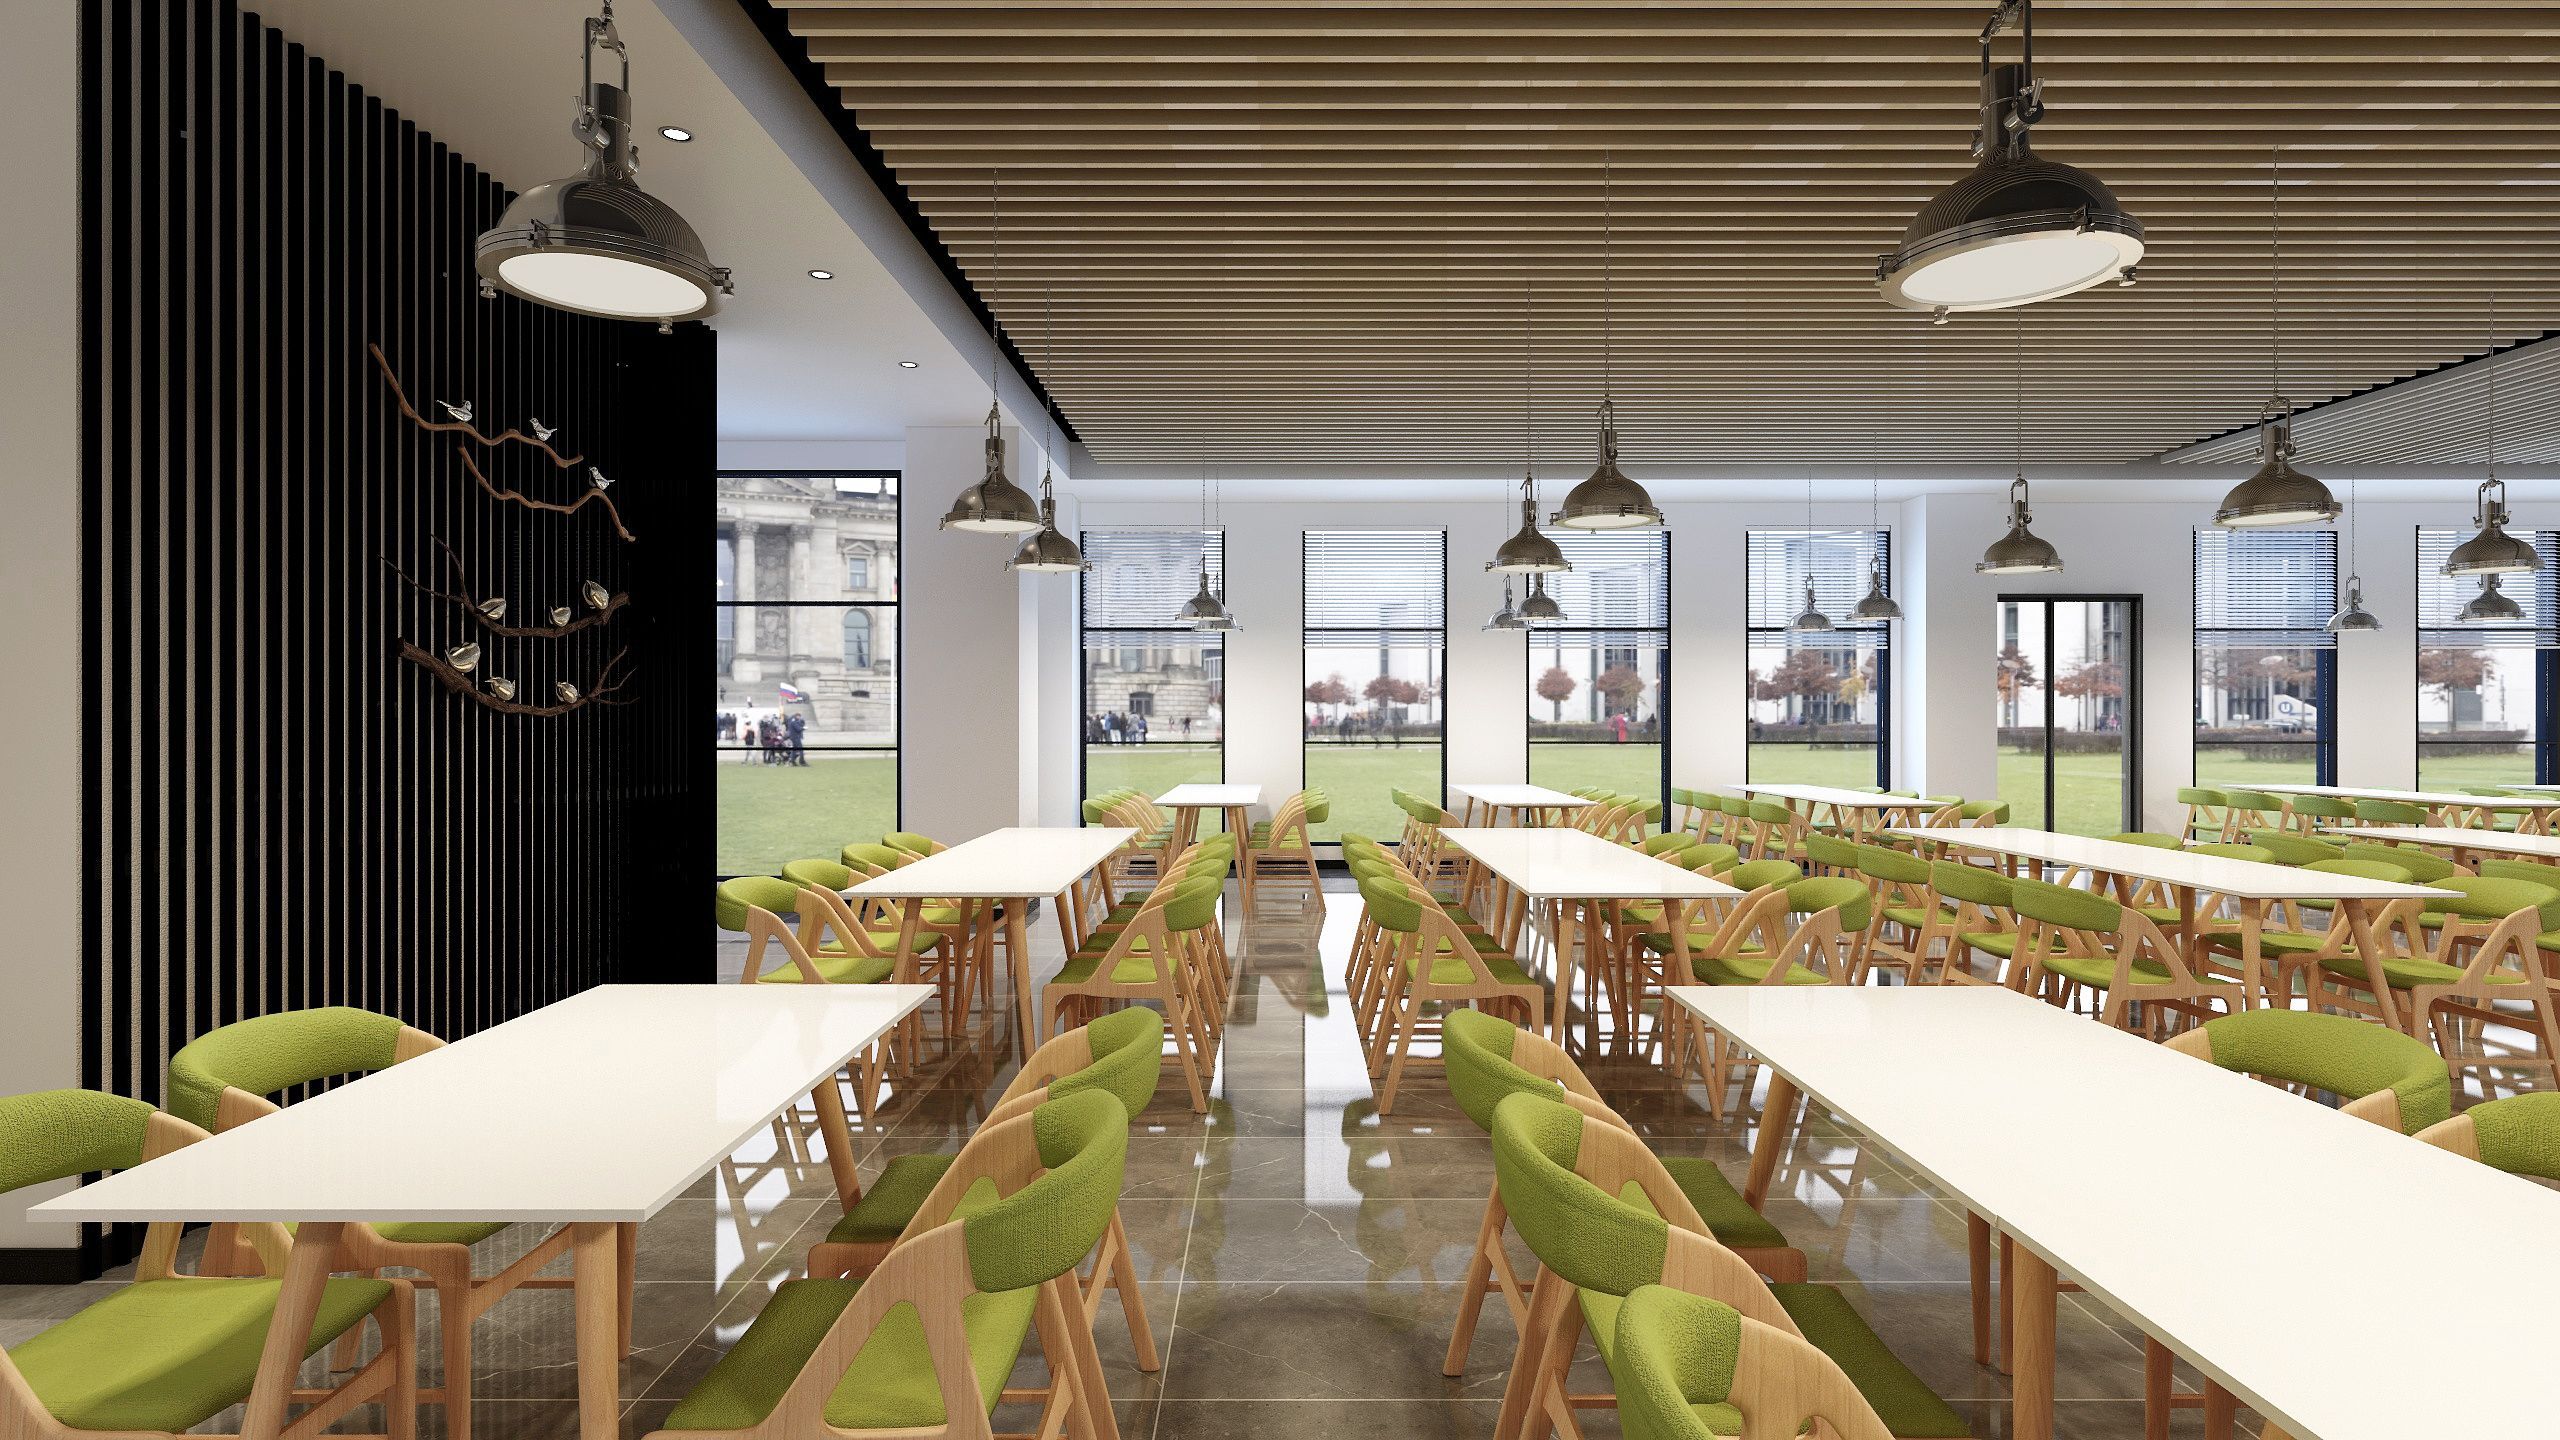 北京华大员工餐厅设计 - 员工餐厅设计 - 武汉金枫荣誉室内环境设计有限公司